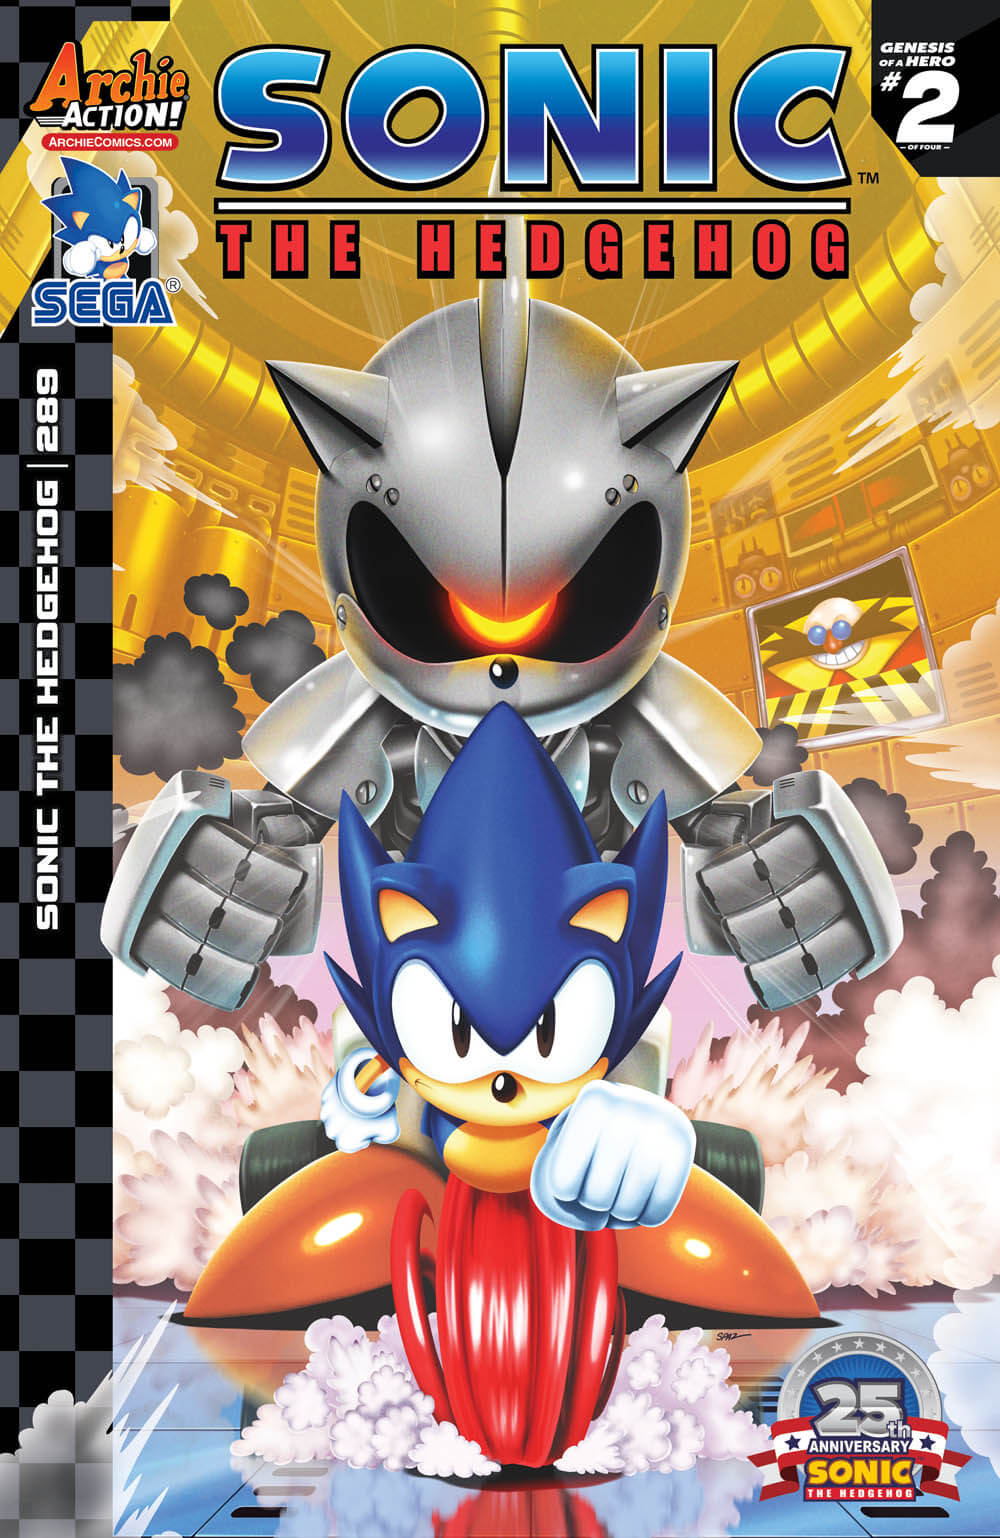 Sonic#289